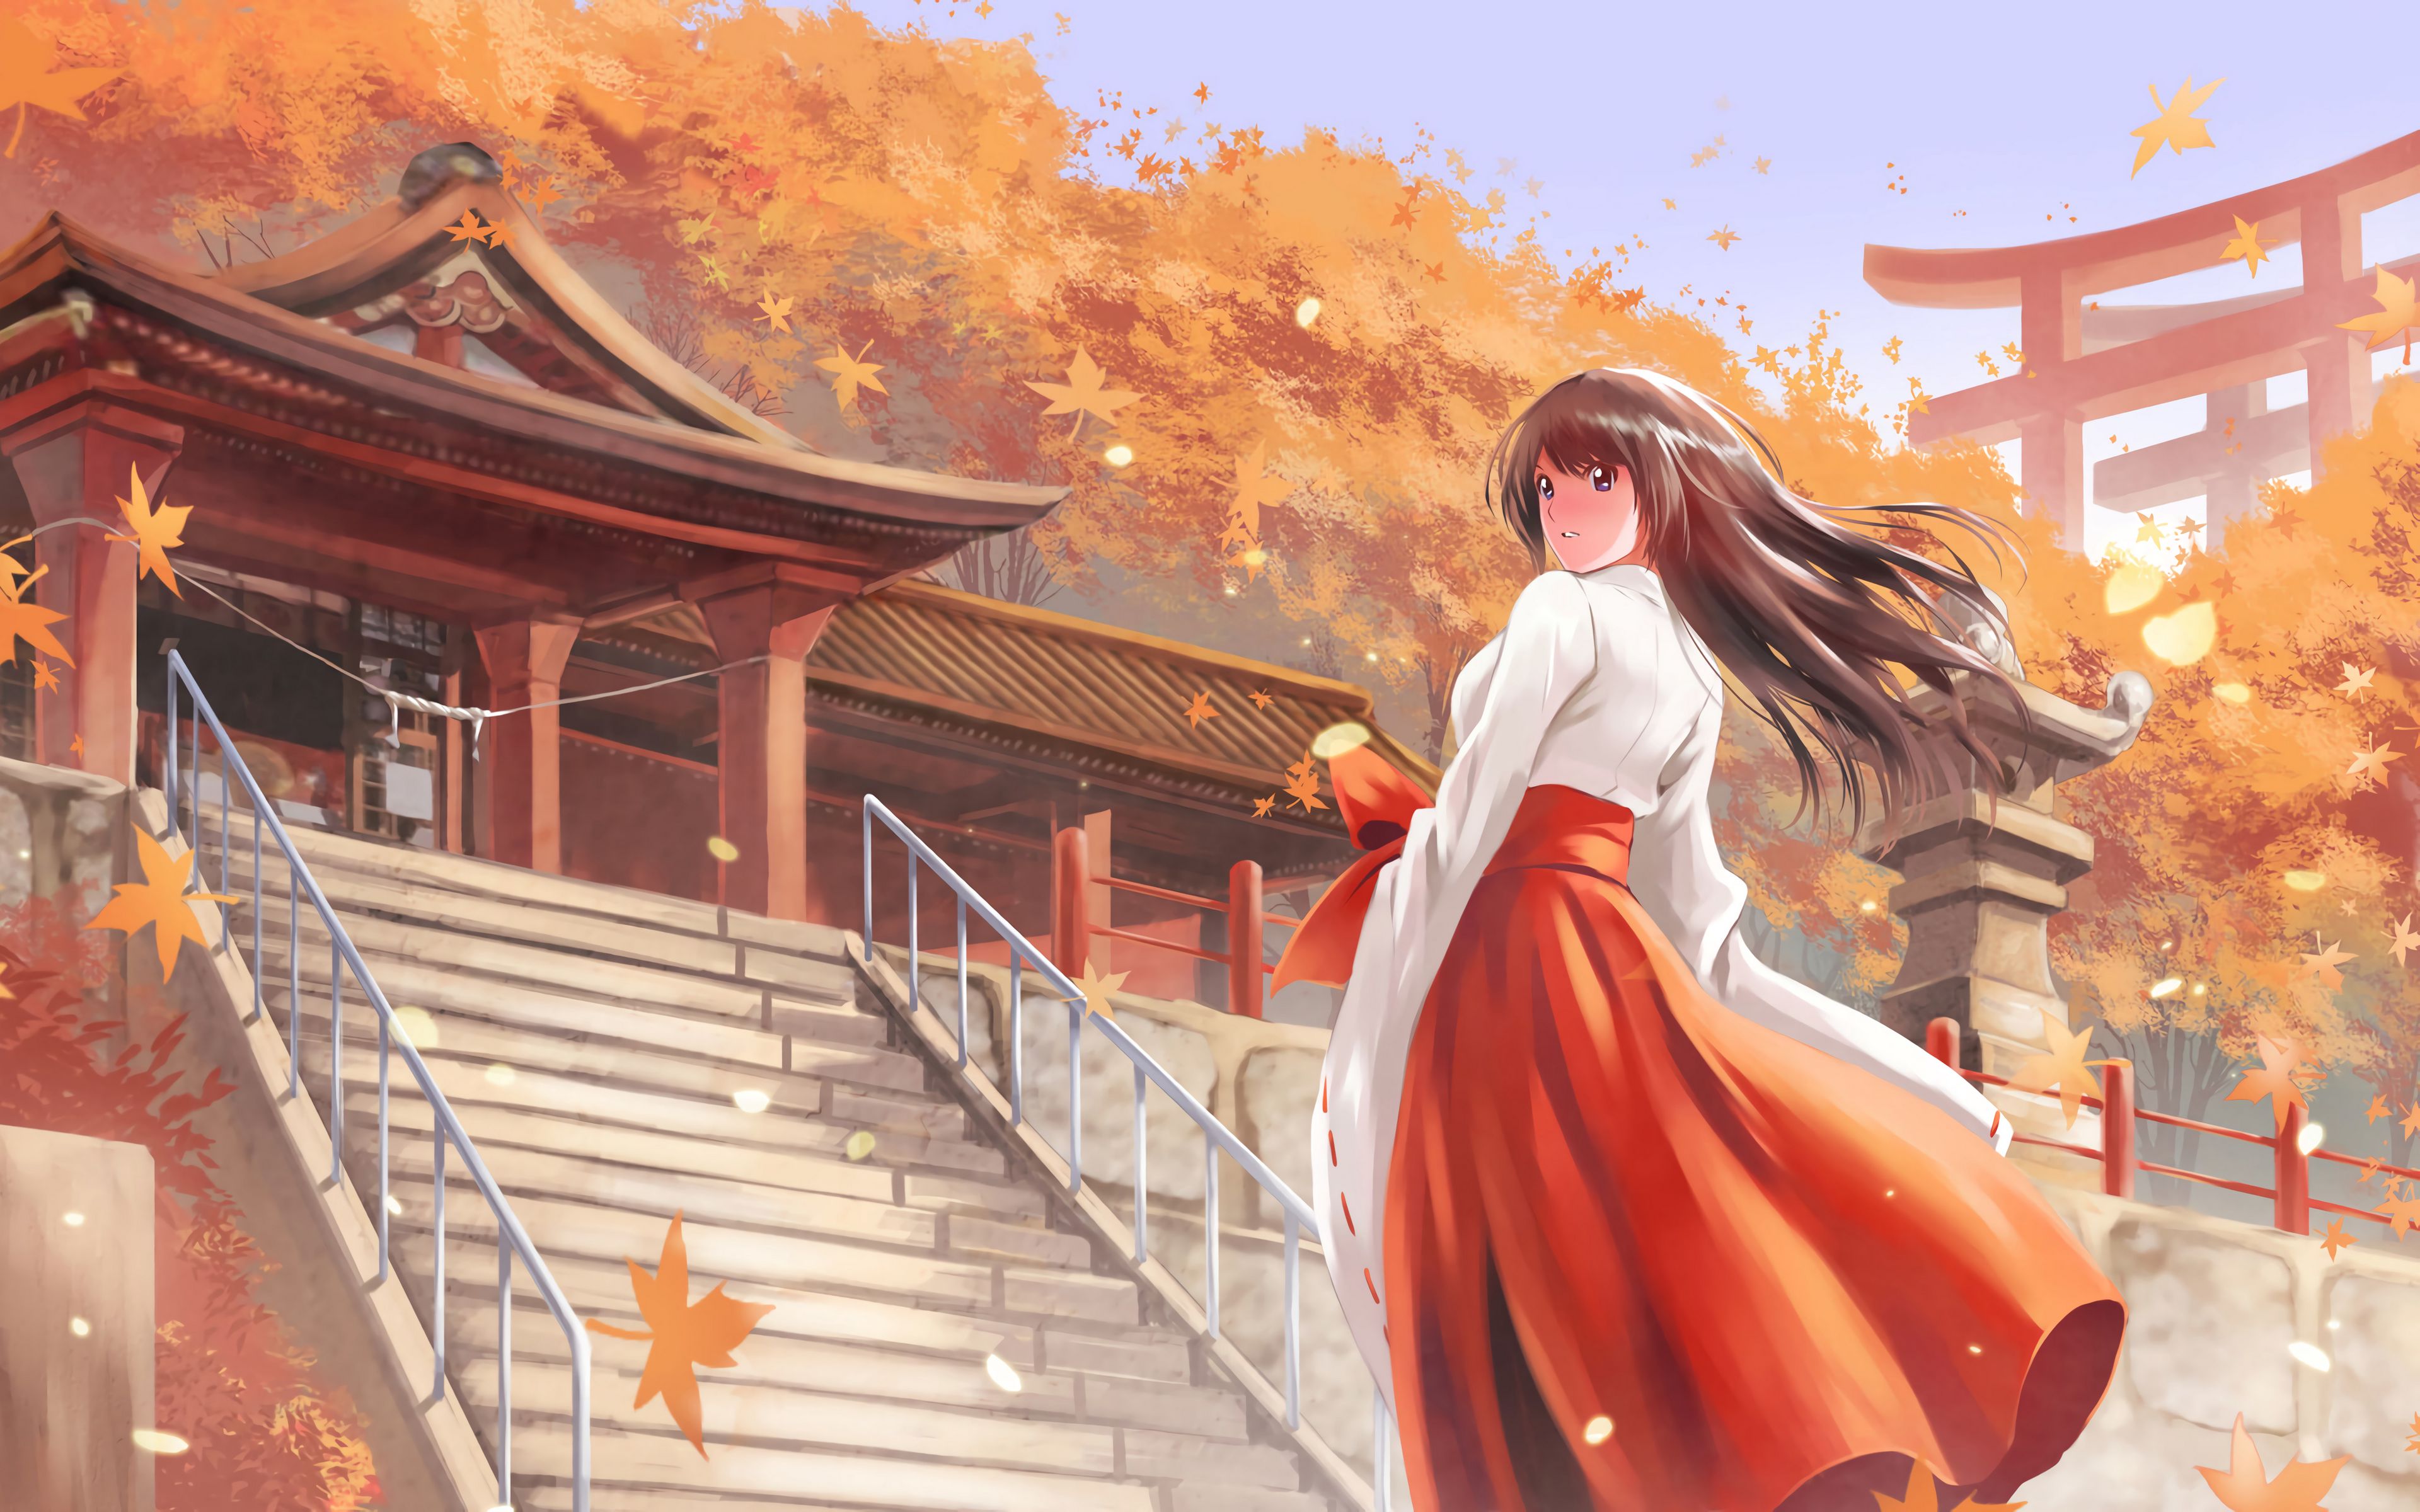 Wallpaper  anime girls red autumn screenshot 3840x2160  kejsirajbek   1512  HD Wallpapers  WallHere